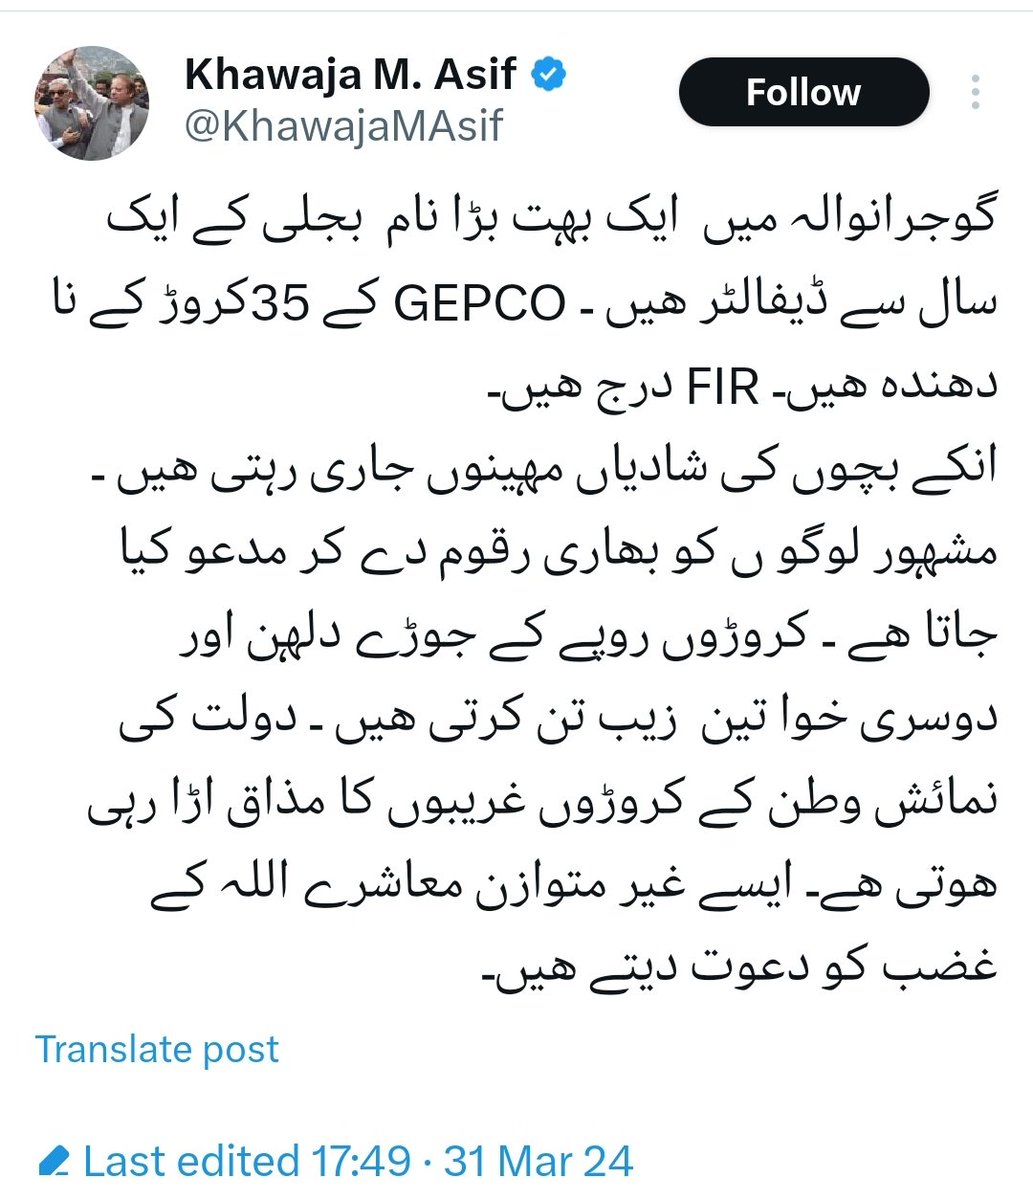 بقول خواجہ محمد آصف صاحب کے پنجاب میں صرف یہ ایک بندہ 35 کروڑ کا نادہندہ ہے. اور نہ جانے پنجاب میں کتنے کارخانے اور کتنے لوگ اربوں کے نا دہندہ ہونگے؟ باقی صوبوں کو تو اتنی کی بجلی میسر بھی نہیں ہوتی، تو خاک اقدامات کریں؟ @CMShehbaz @KhawajaMAsif